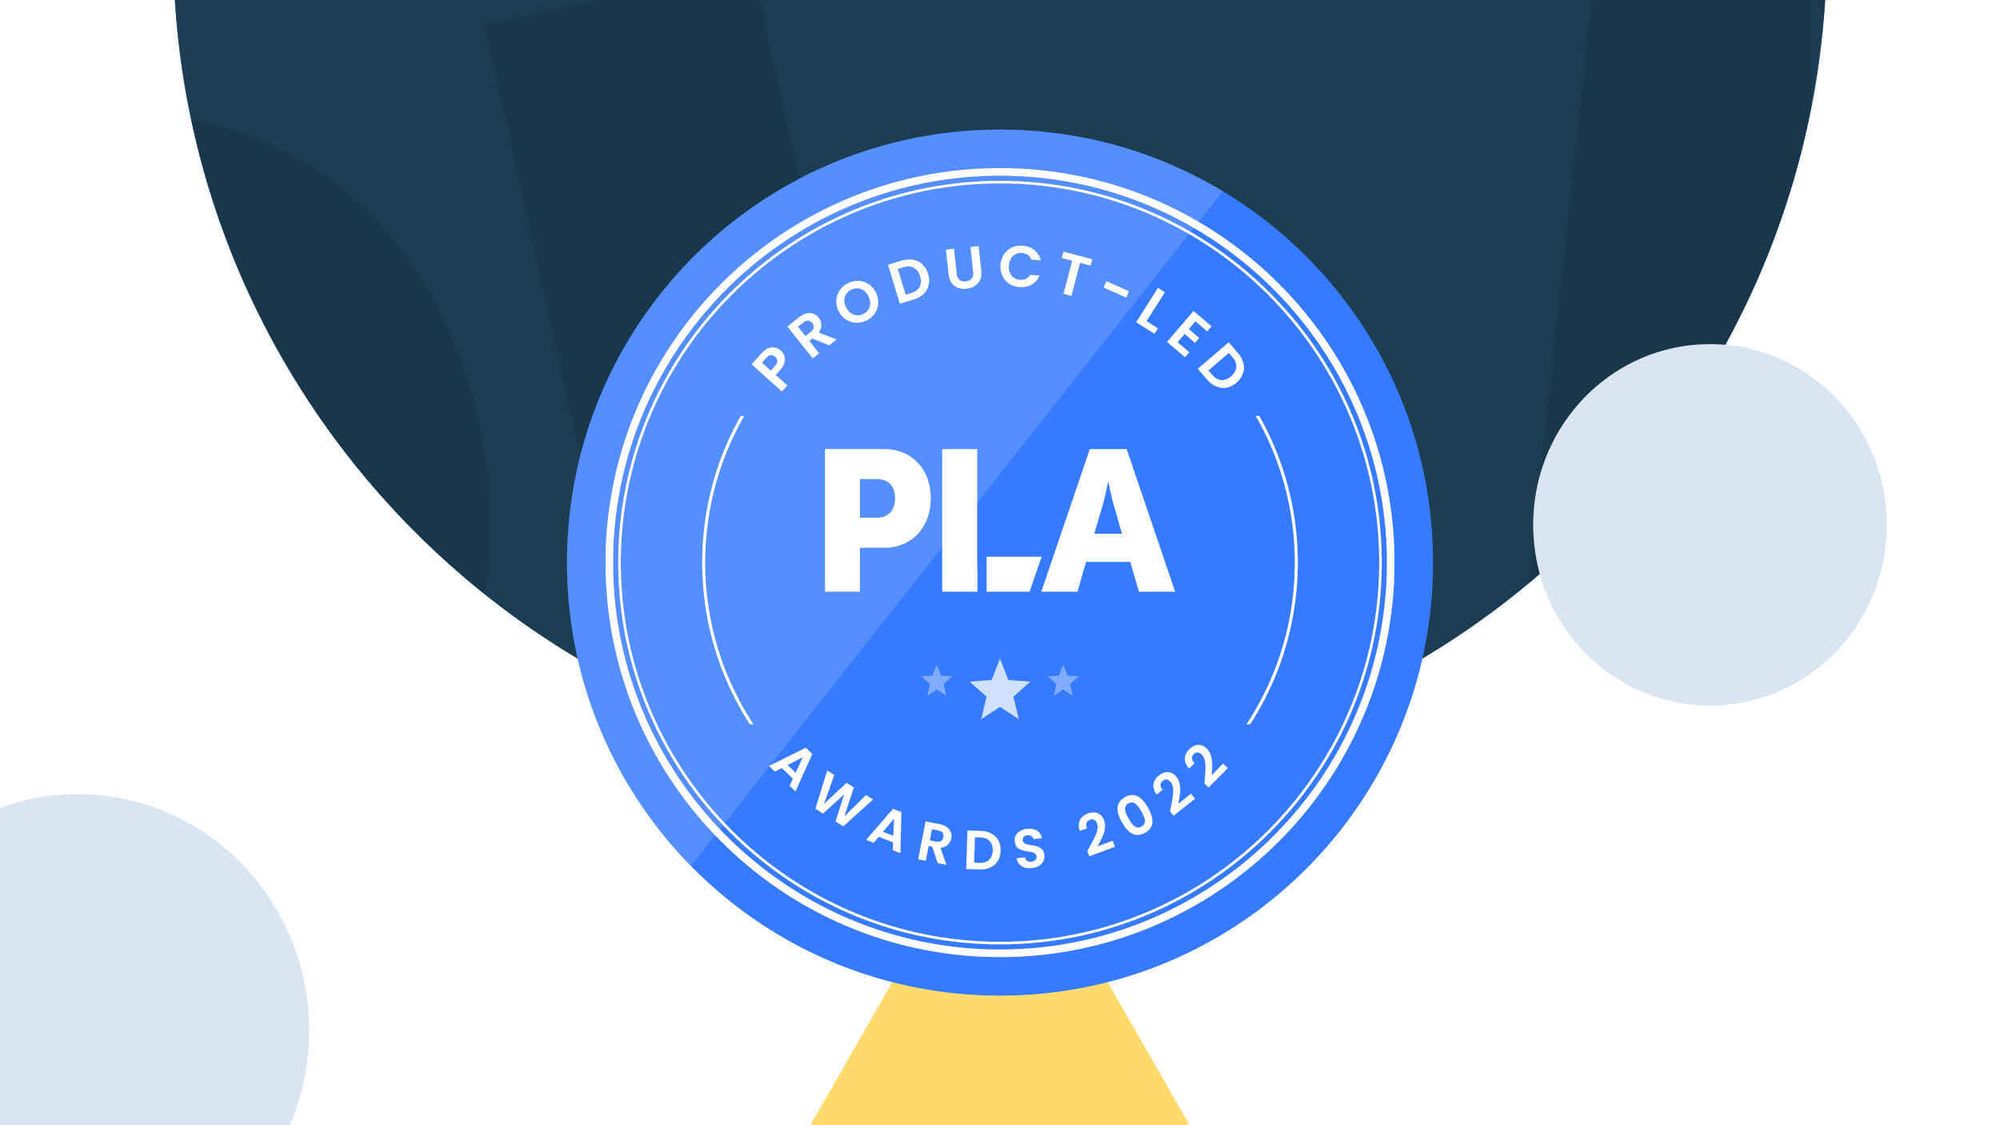 Product-Led Awards 2022